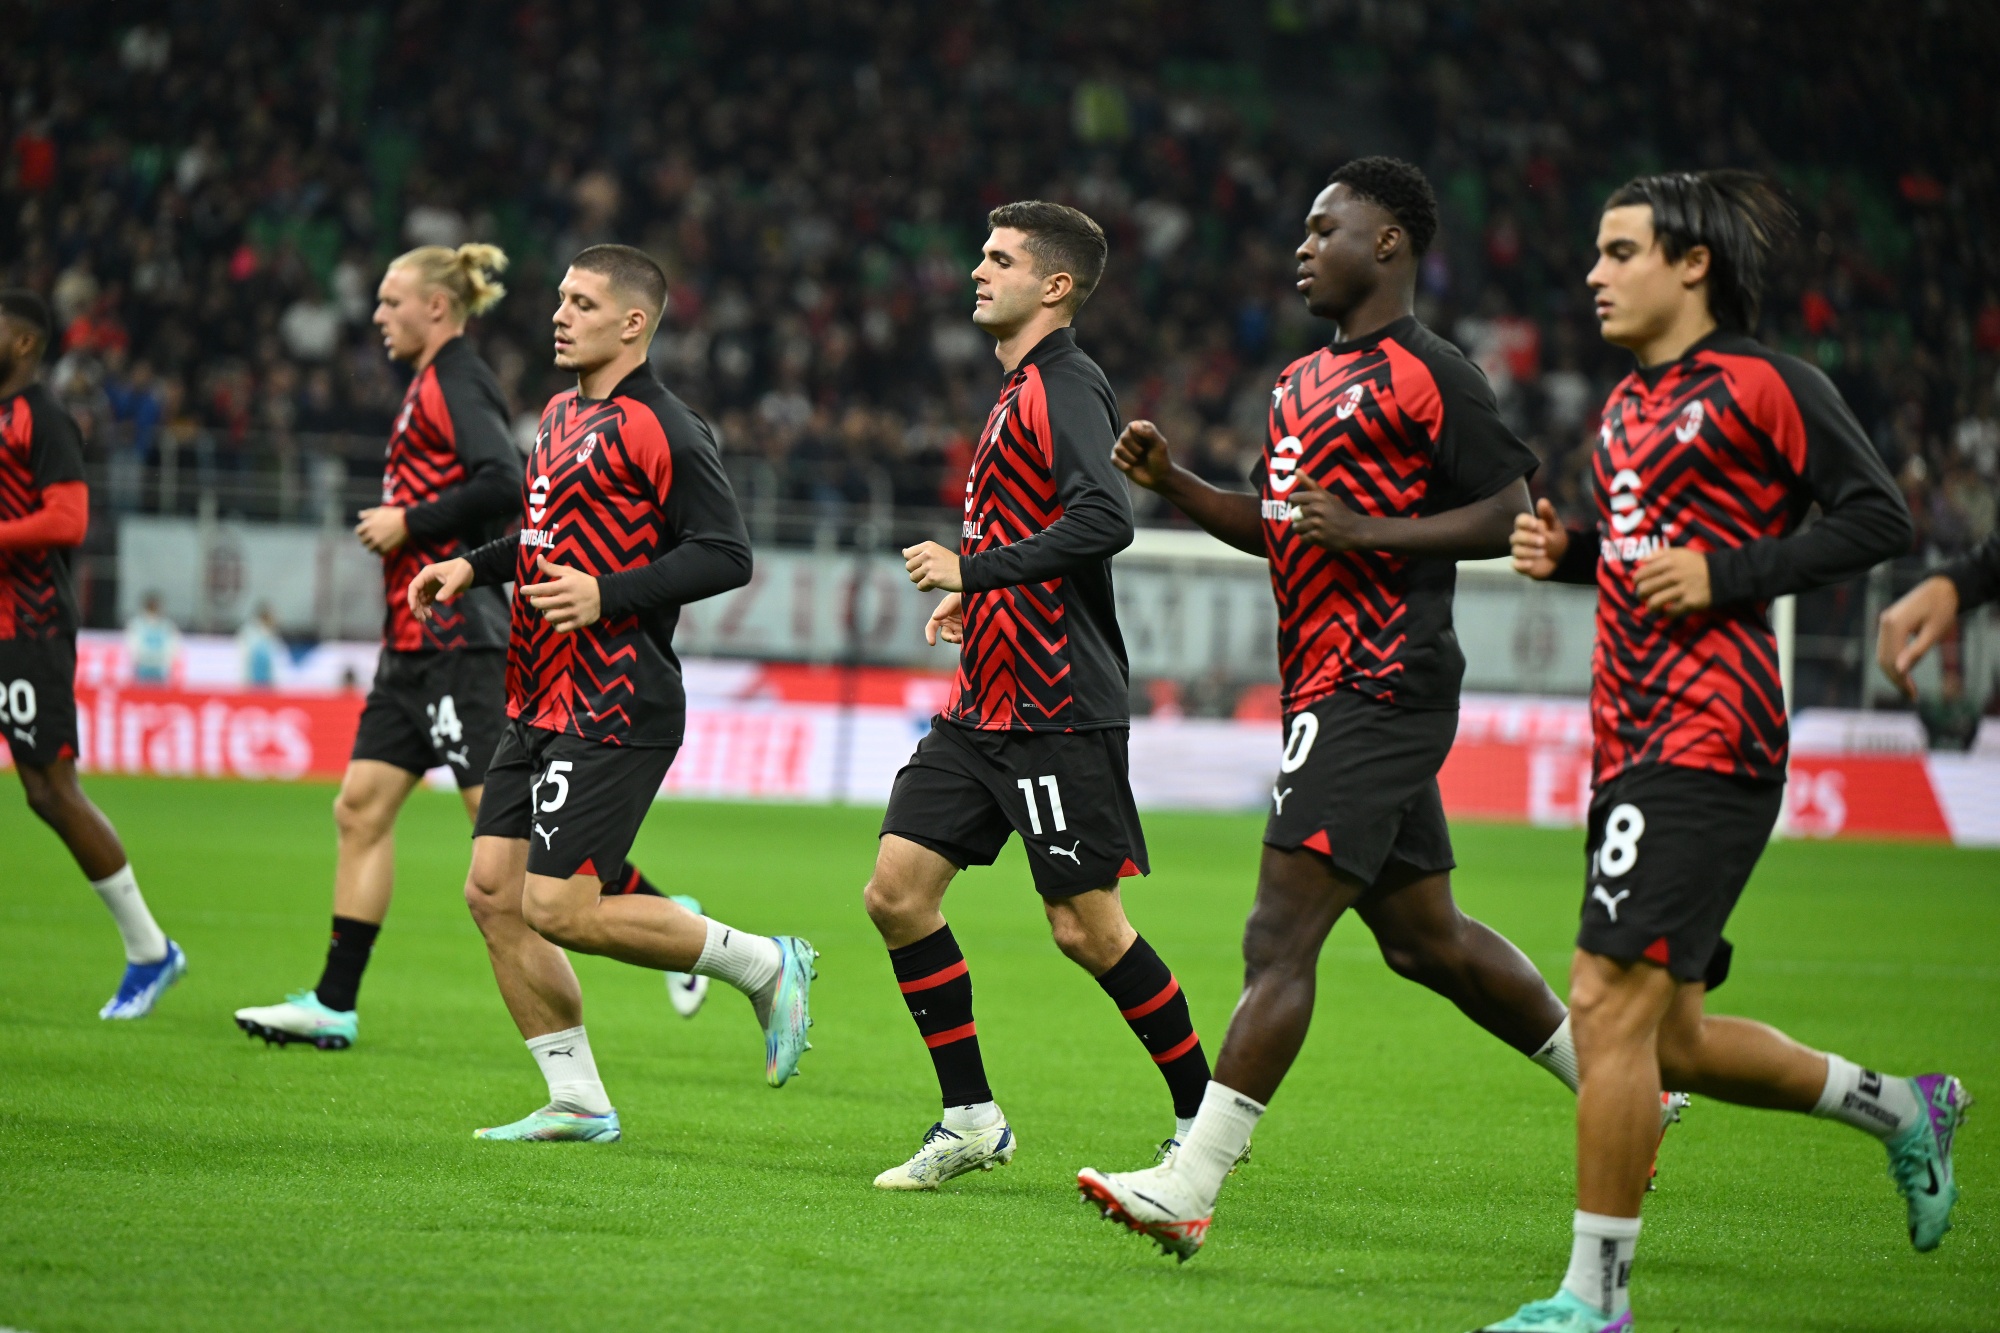 Club de futbol AC Milan vuelve a ser rentable después de 17 años - Bloomberg